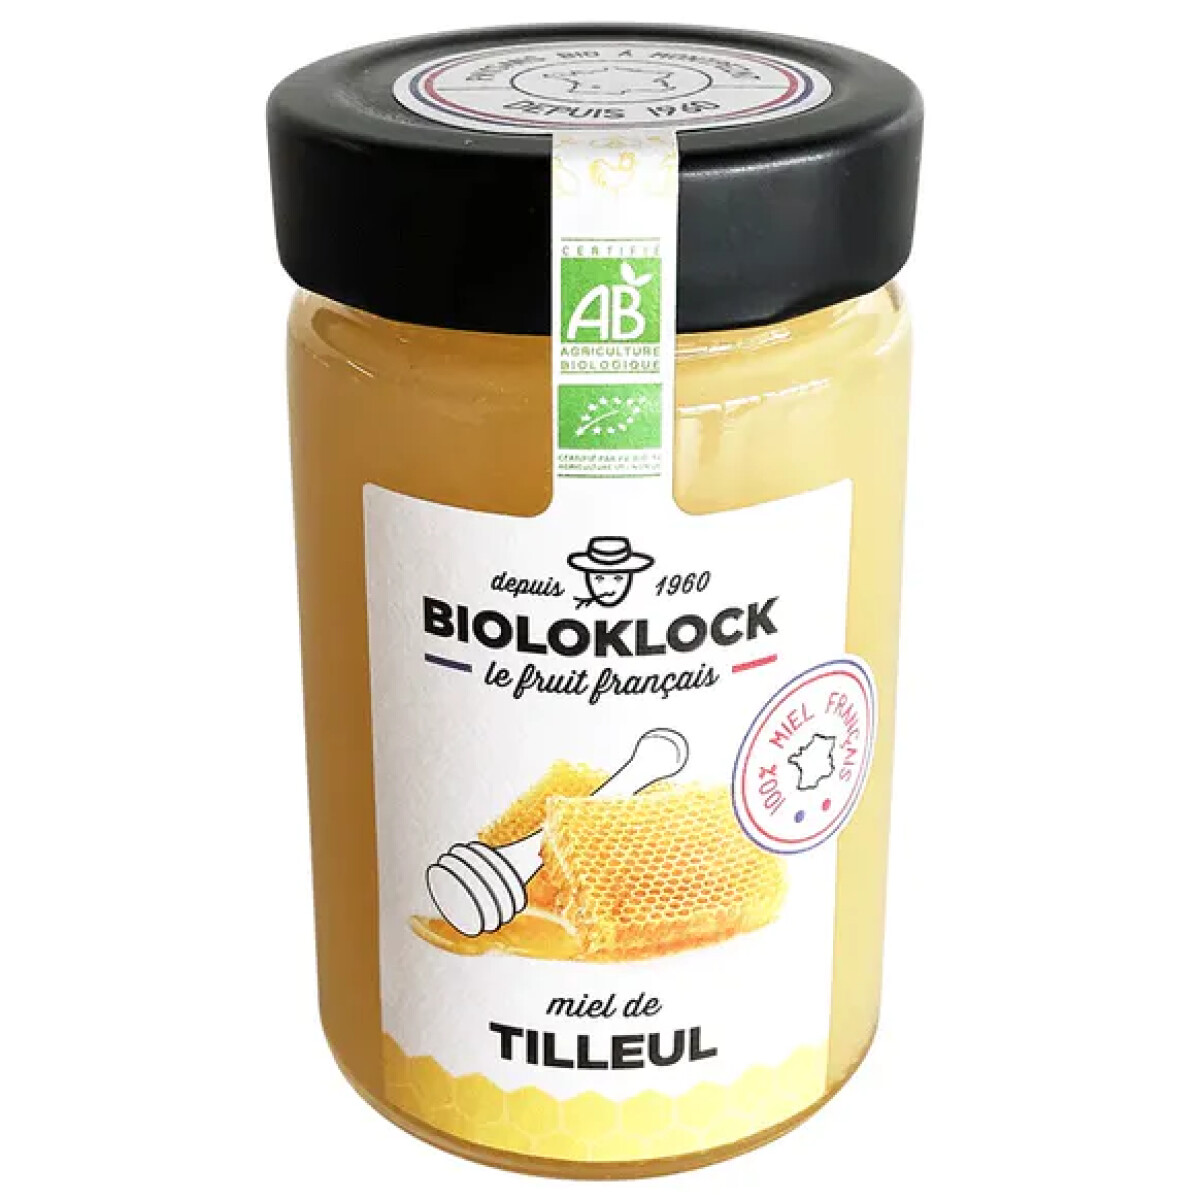 Bioloklock Französischer Miel de Tilleul, Lindnhonig Französischer Lindenhonig, auch bekannt als Tilleul-Honig, ist eine köstliche Honigsorte, die aus den Blüten der Linde (Tilia) gewonnen wird.